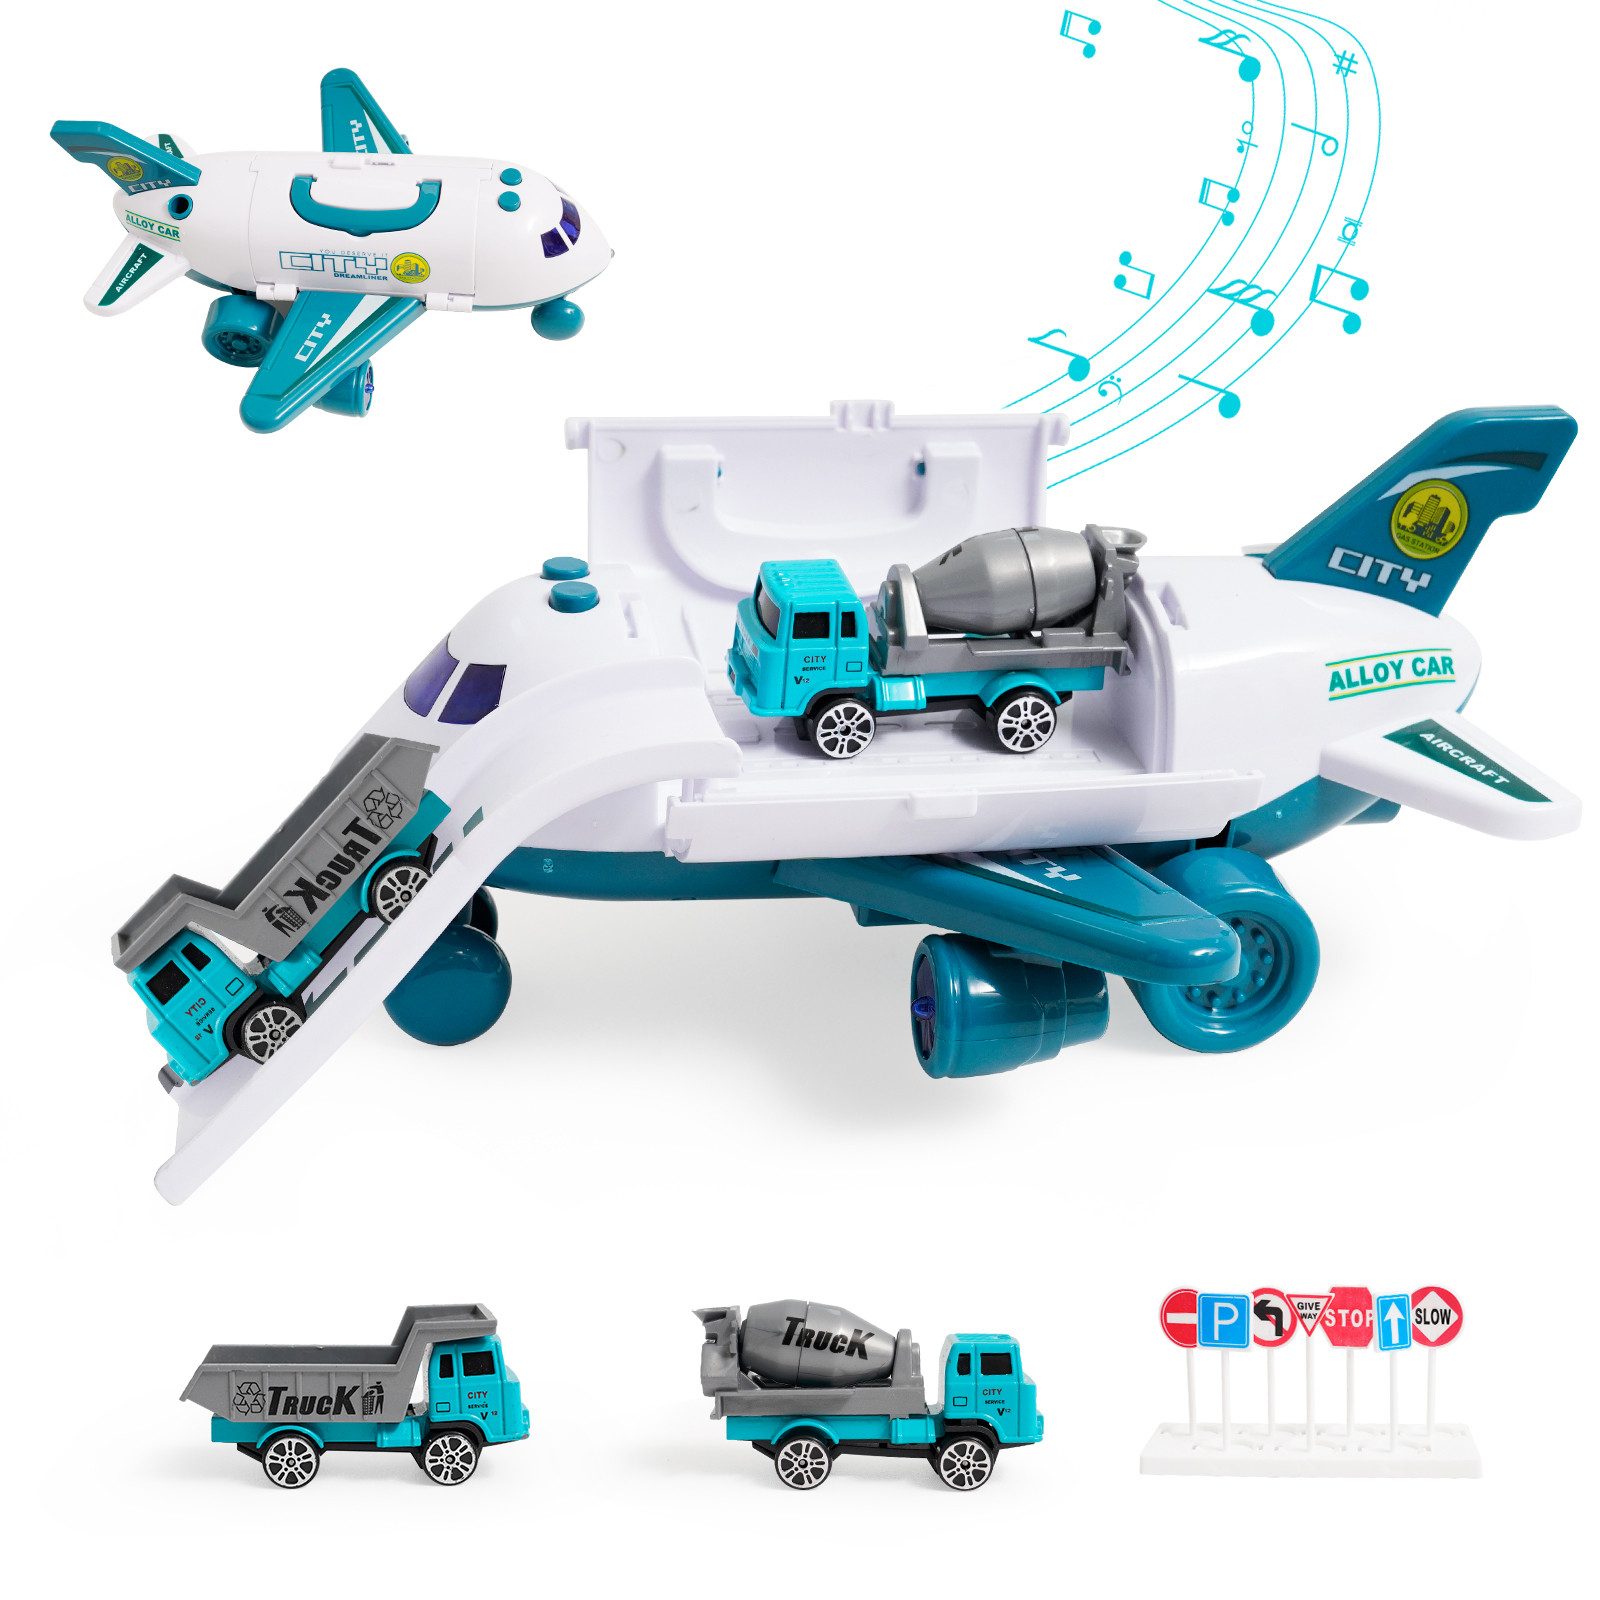 LBLA Spielzeug-Flugzeug Transport Flugzeug Spielzeug, (2 Lastwagen+ 1 Hubschrauber Set), Flugzeug mit simuliertem Abgas-Effekt - Sprüheffekt mit Wasseraufnahme